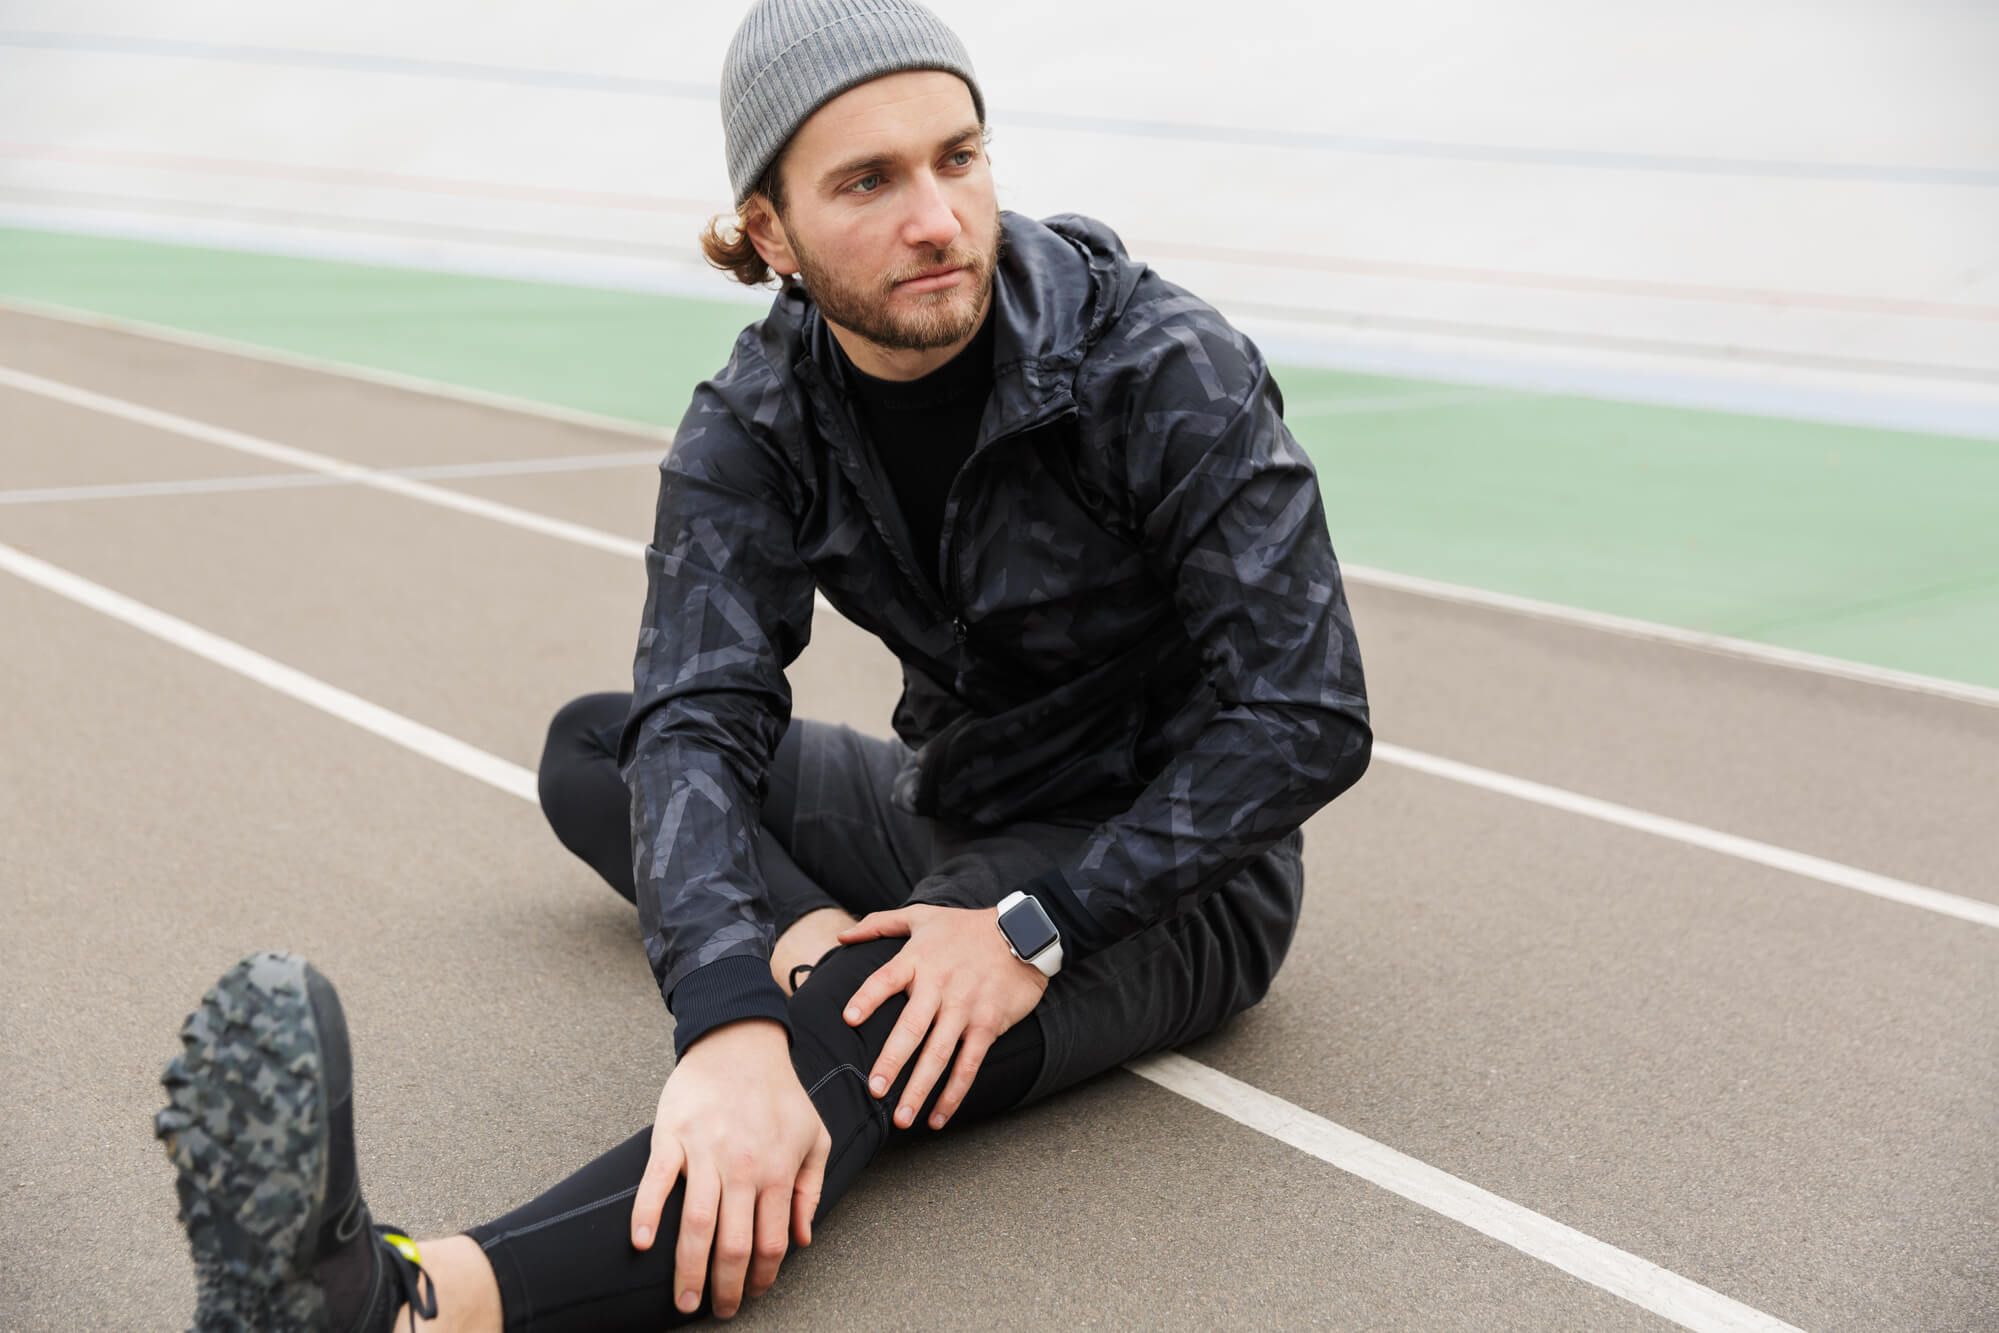 Un hombre vestido con un traje de entrenamiento negro estira mientras está sentado en una pista de atletismo con tiempo fresco. ¿Los niveles de testosterona fluctúan de forma natural o estacional?